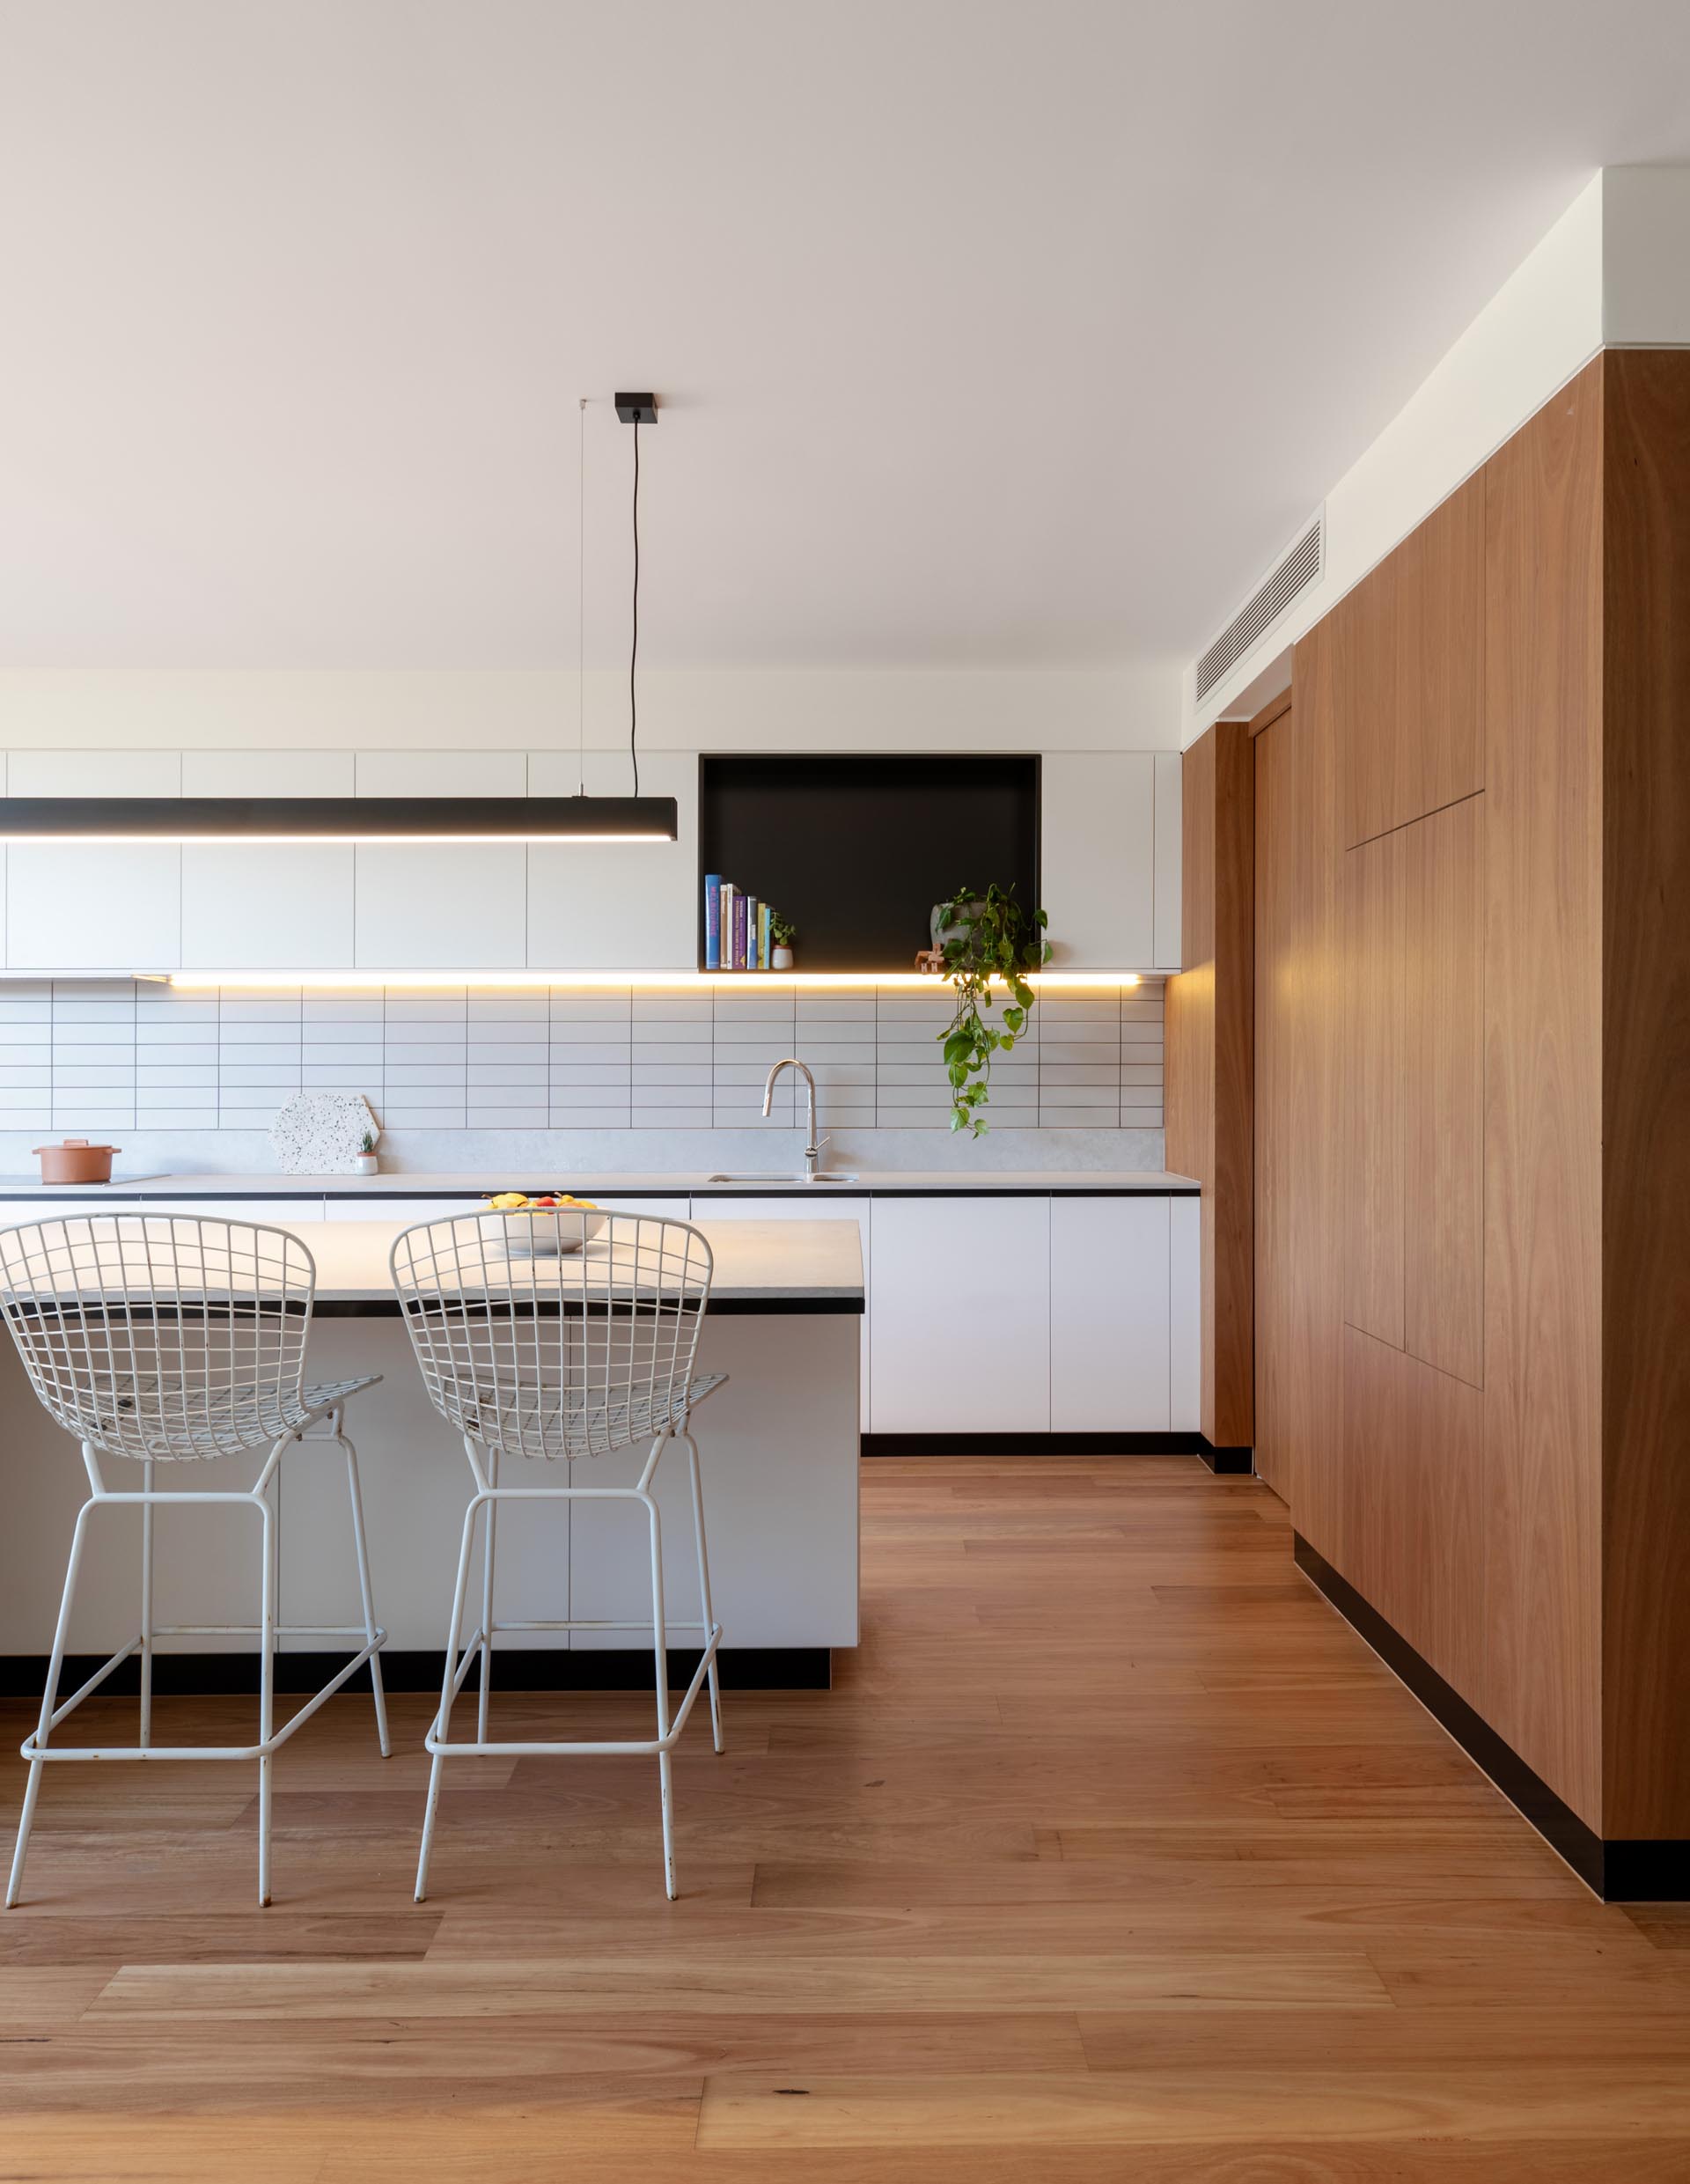 Современная кухня включает в себя минималистичные белые шкафы, черную полку с акцентом, большой остров с местом для сидения и нижнее освещение.